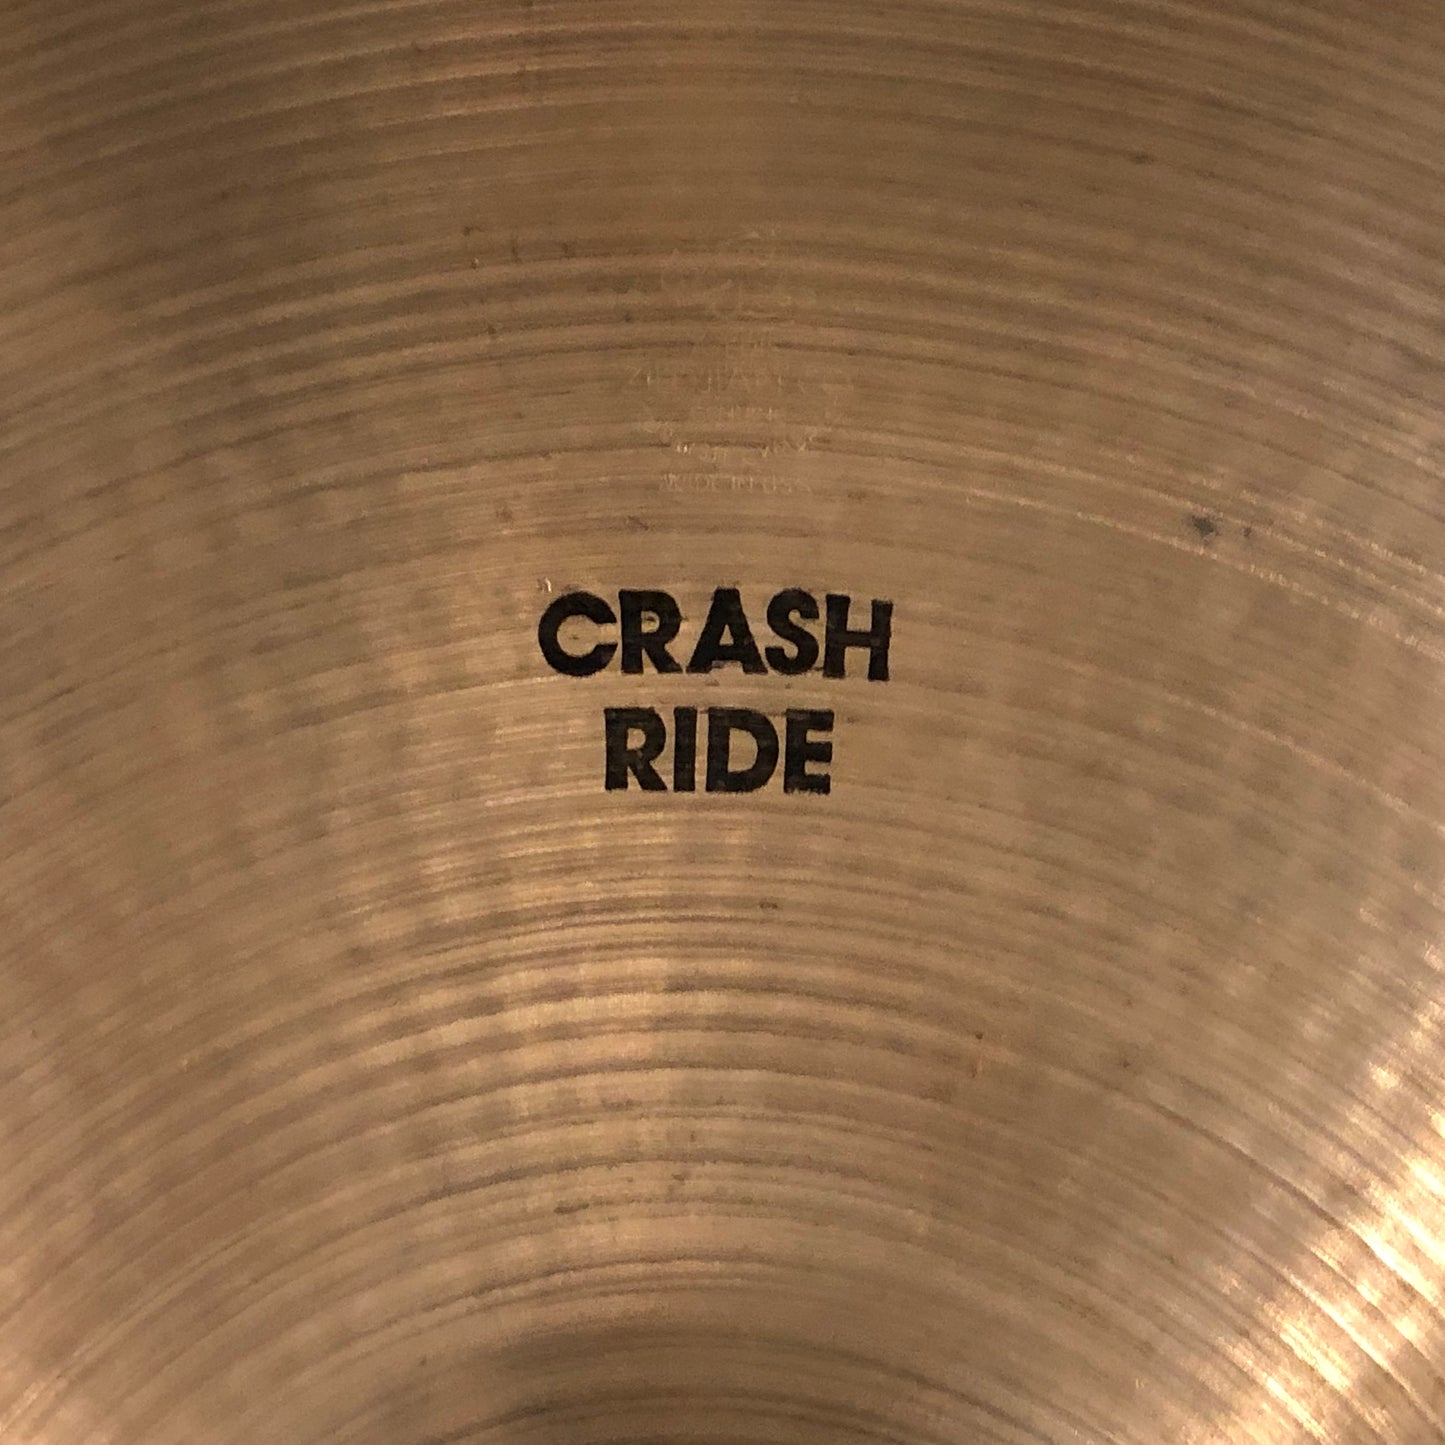 18" Zildjian A 1970s Crash Ride Cymbal 1476g #809